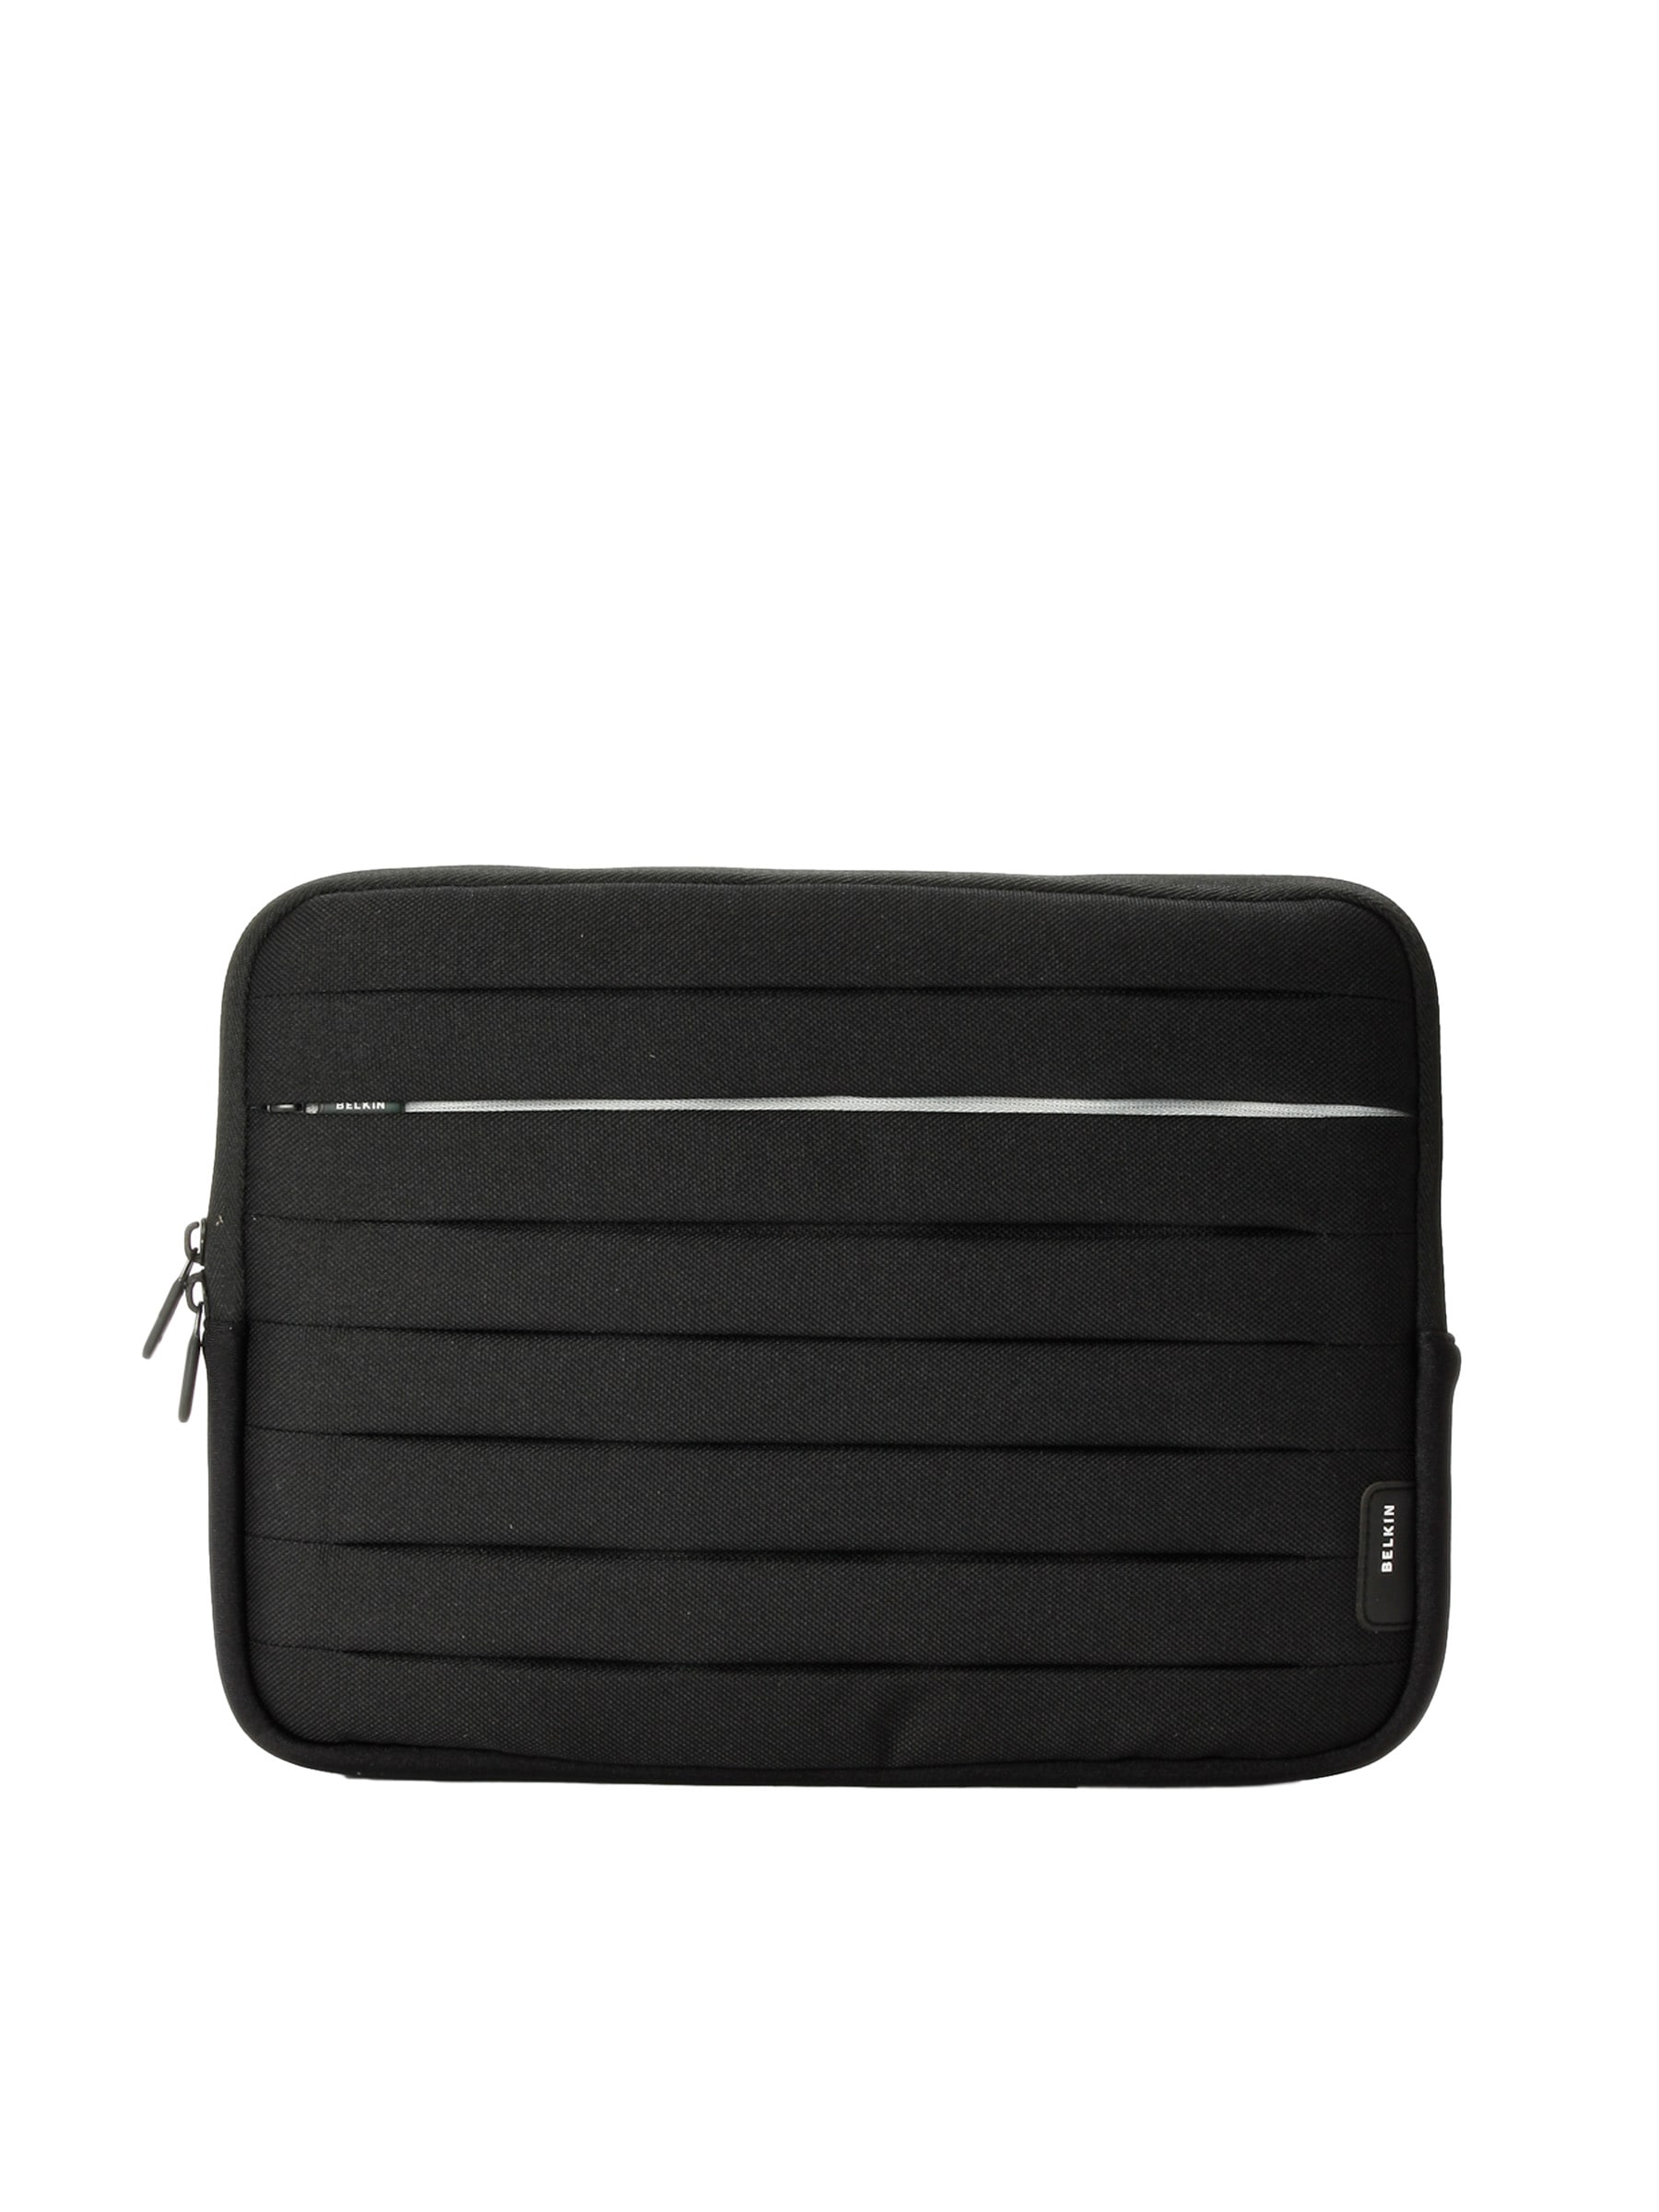 Belkin Unisex Max Sleeve Black Netbook Bag